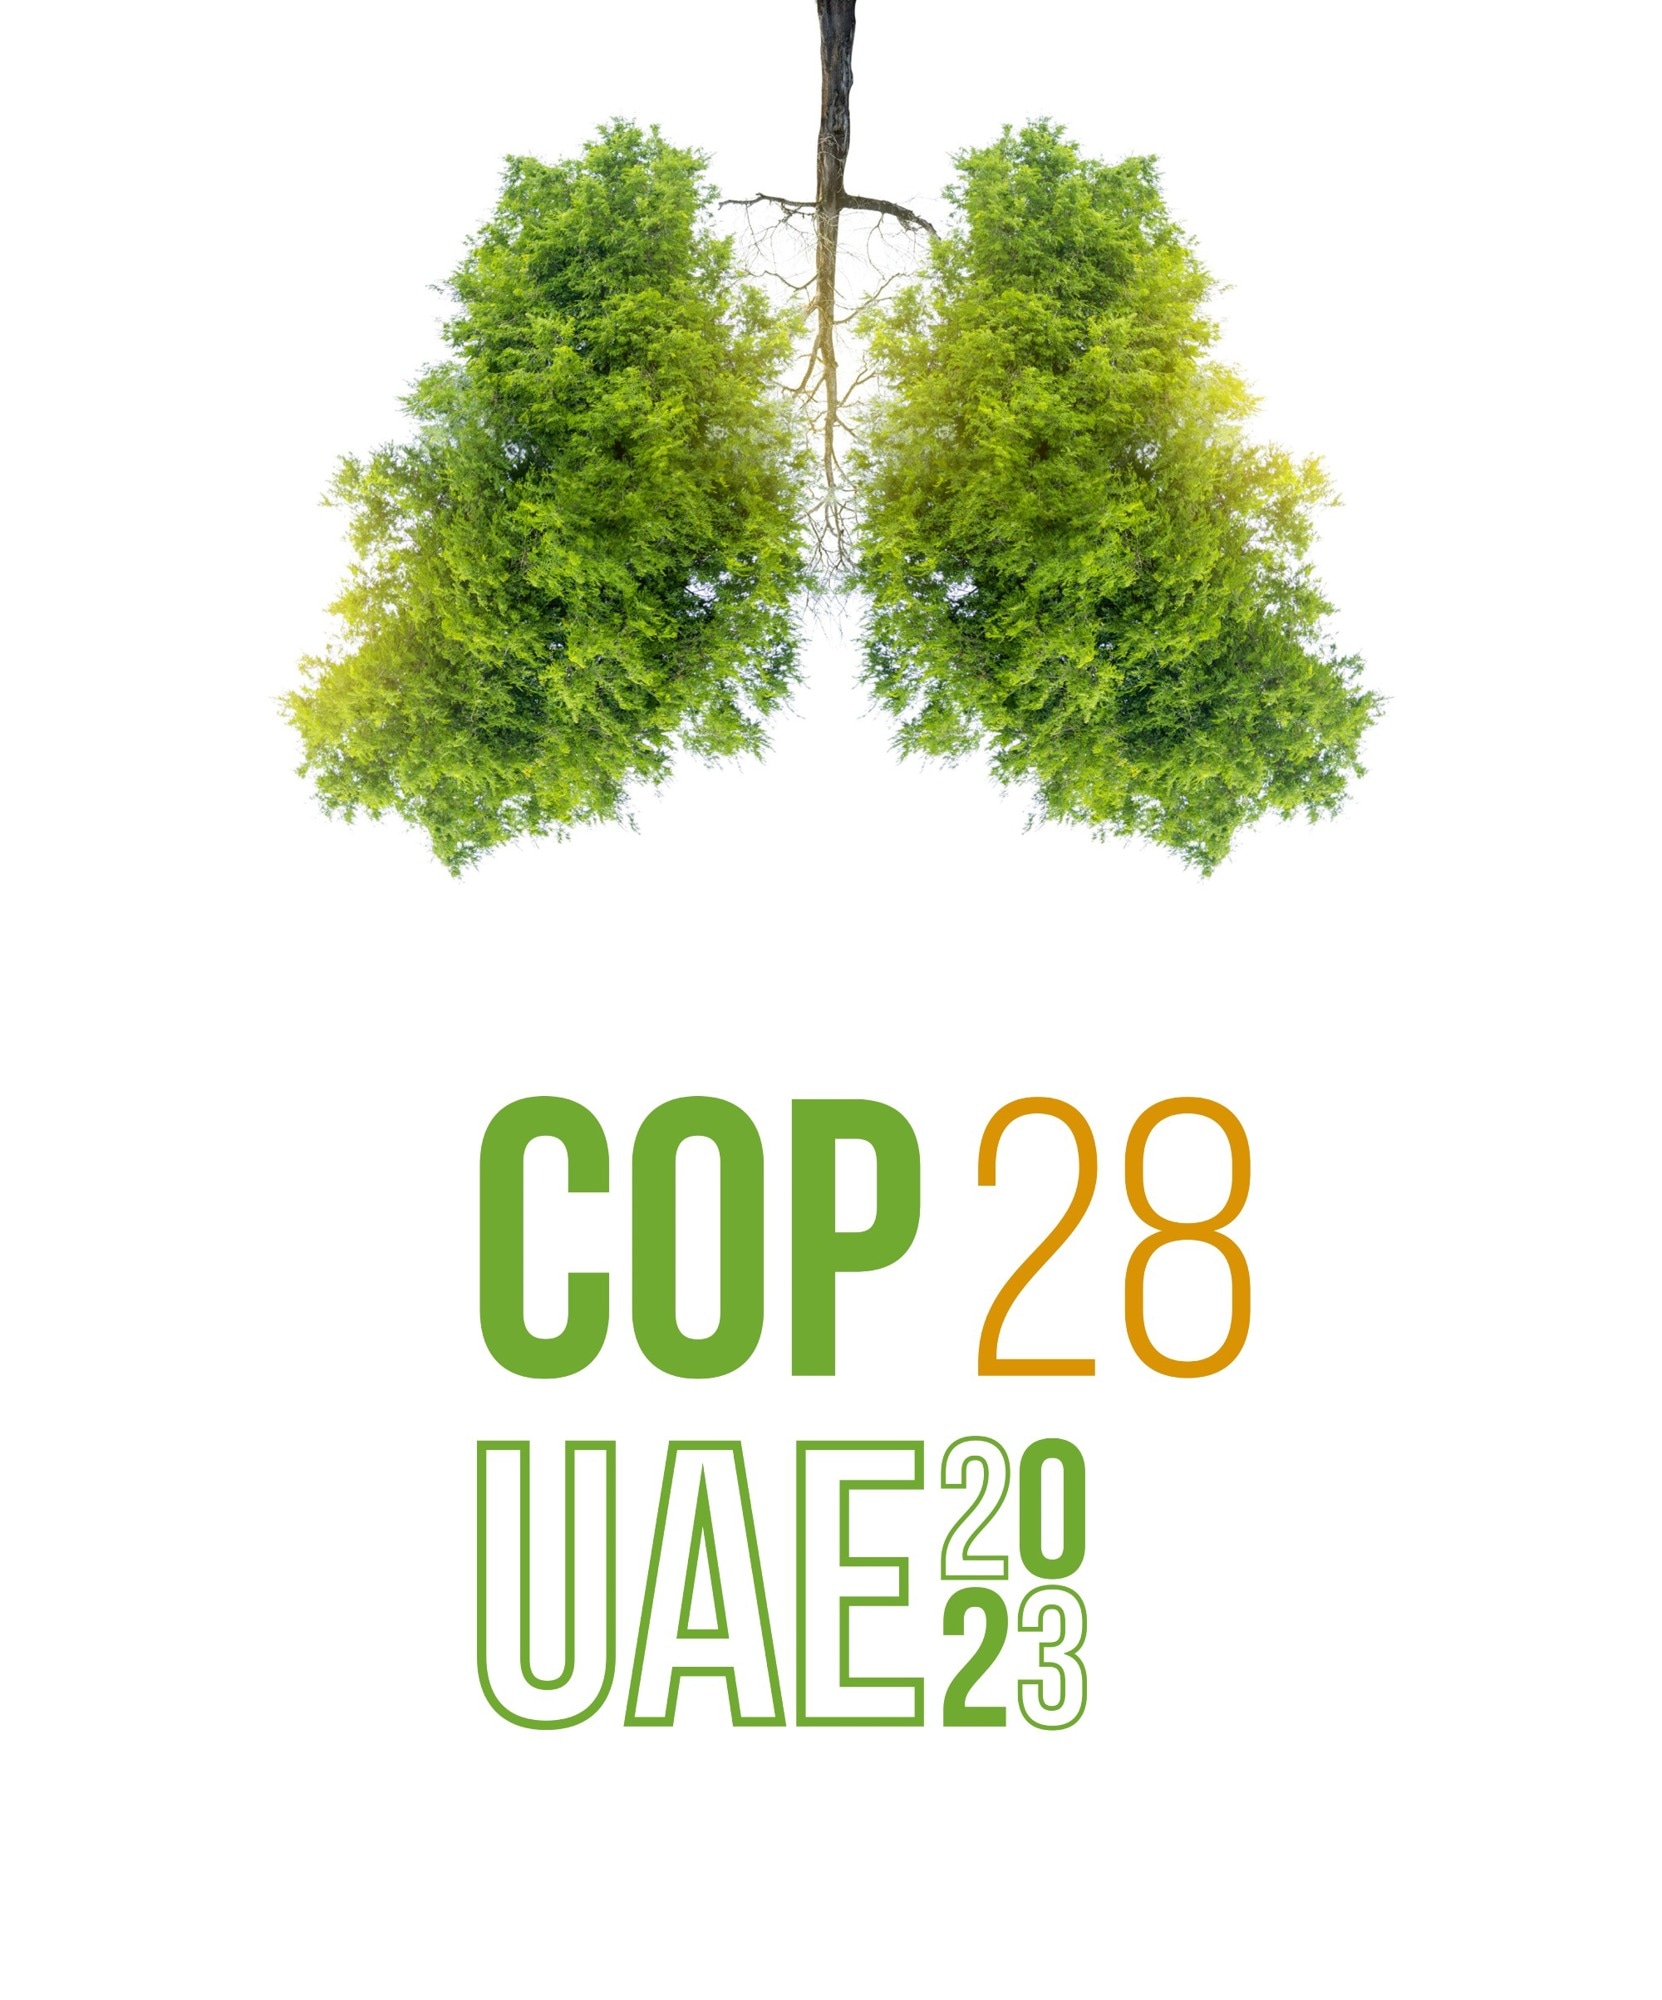 11,000 GW by 2030: COP28